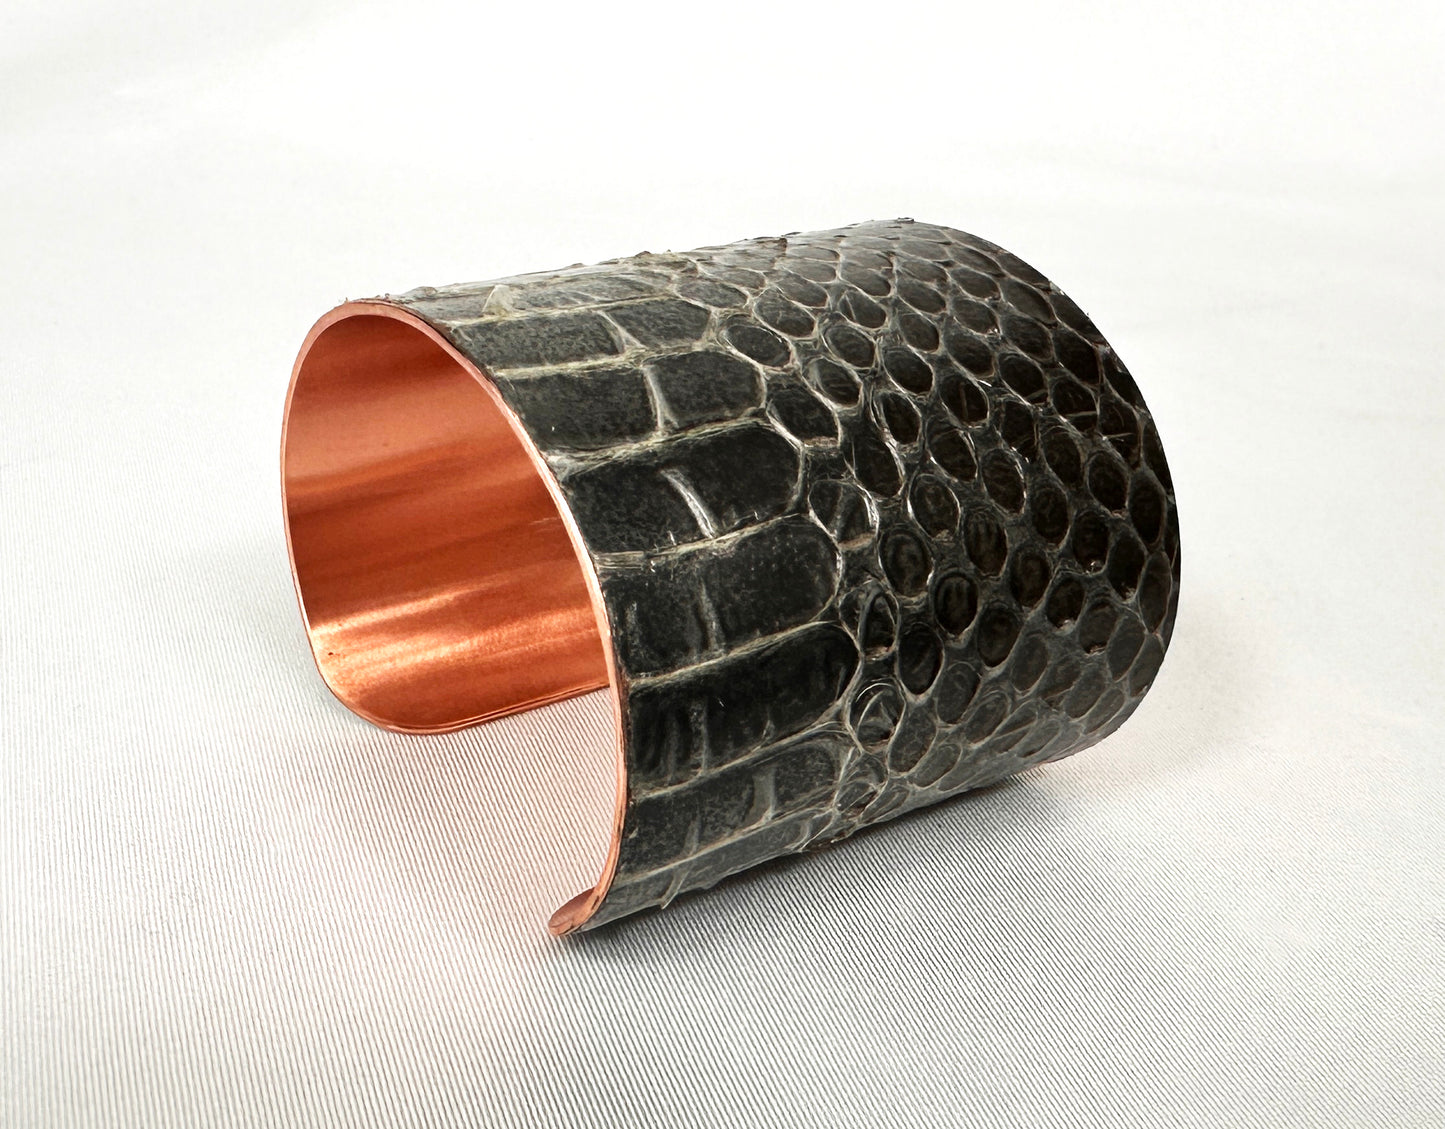 2" Antiqued Copper Snake Shed Cuff Bracelet (Mexican Black Kingsnake)